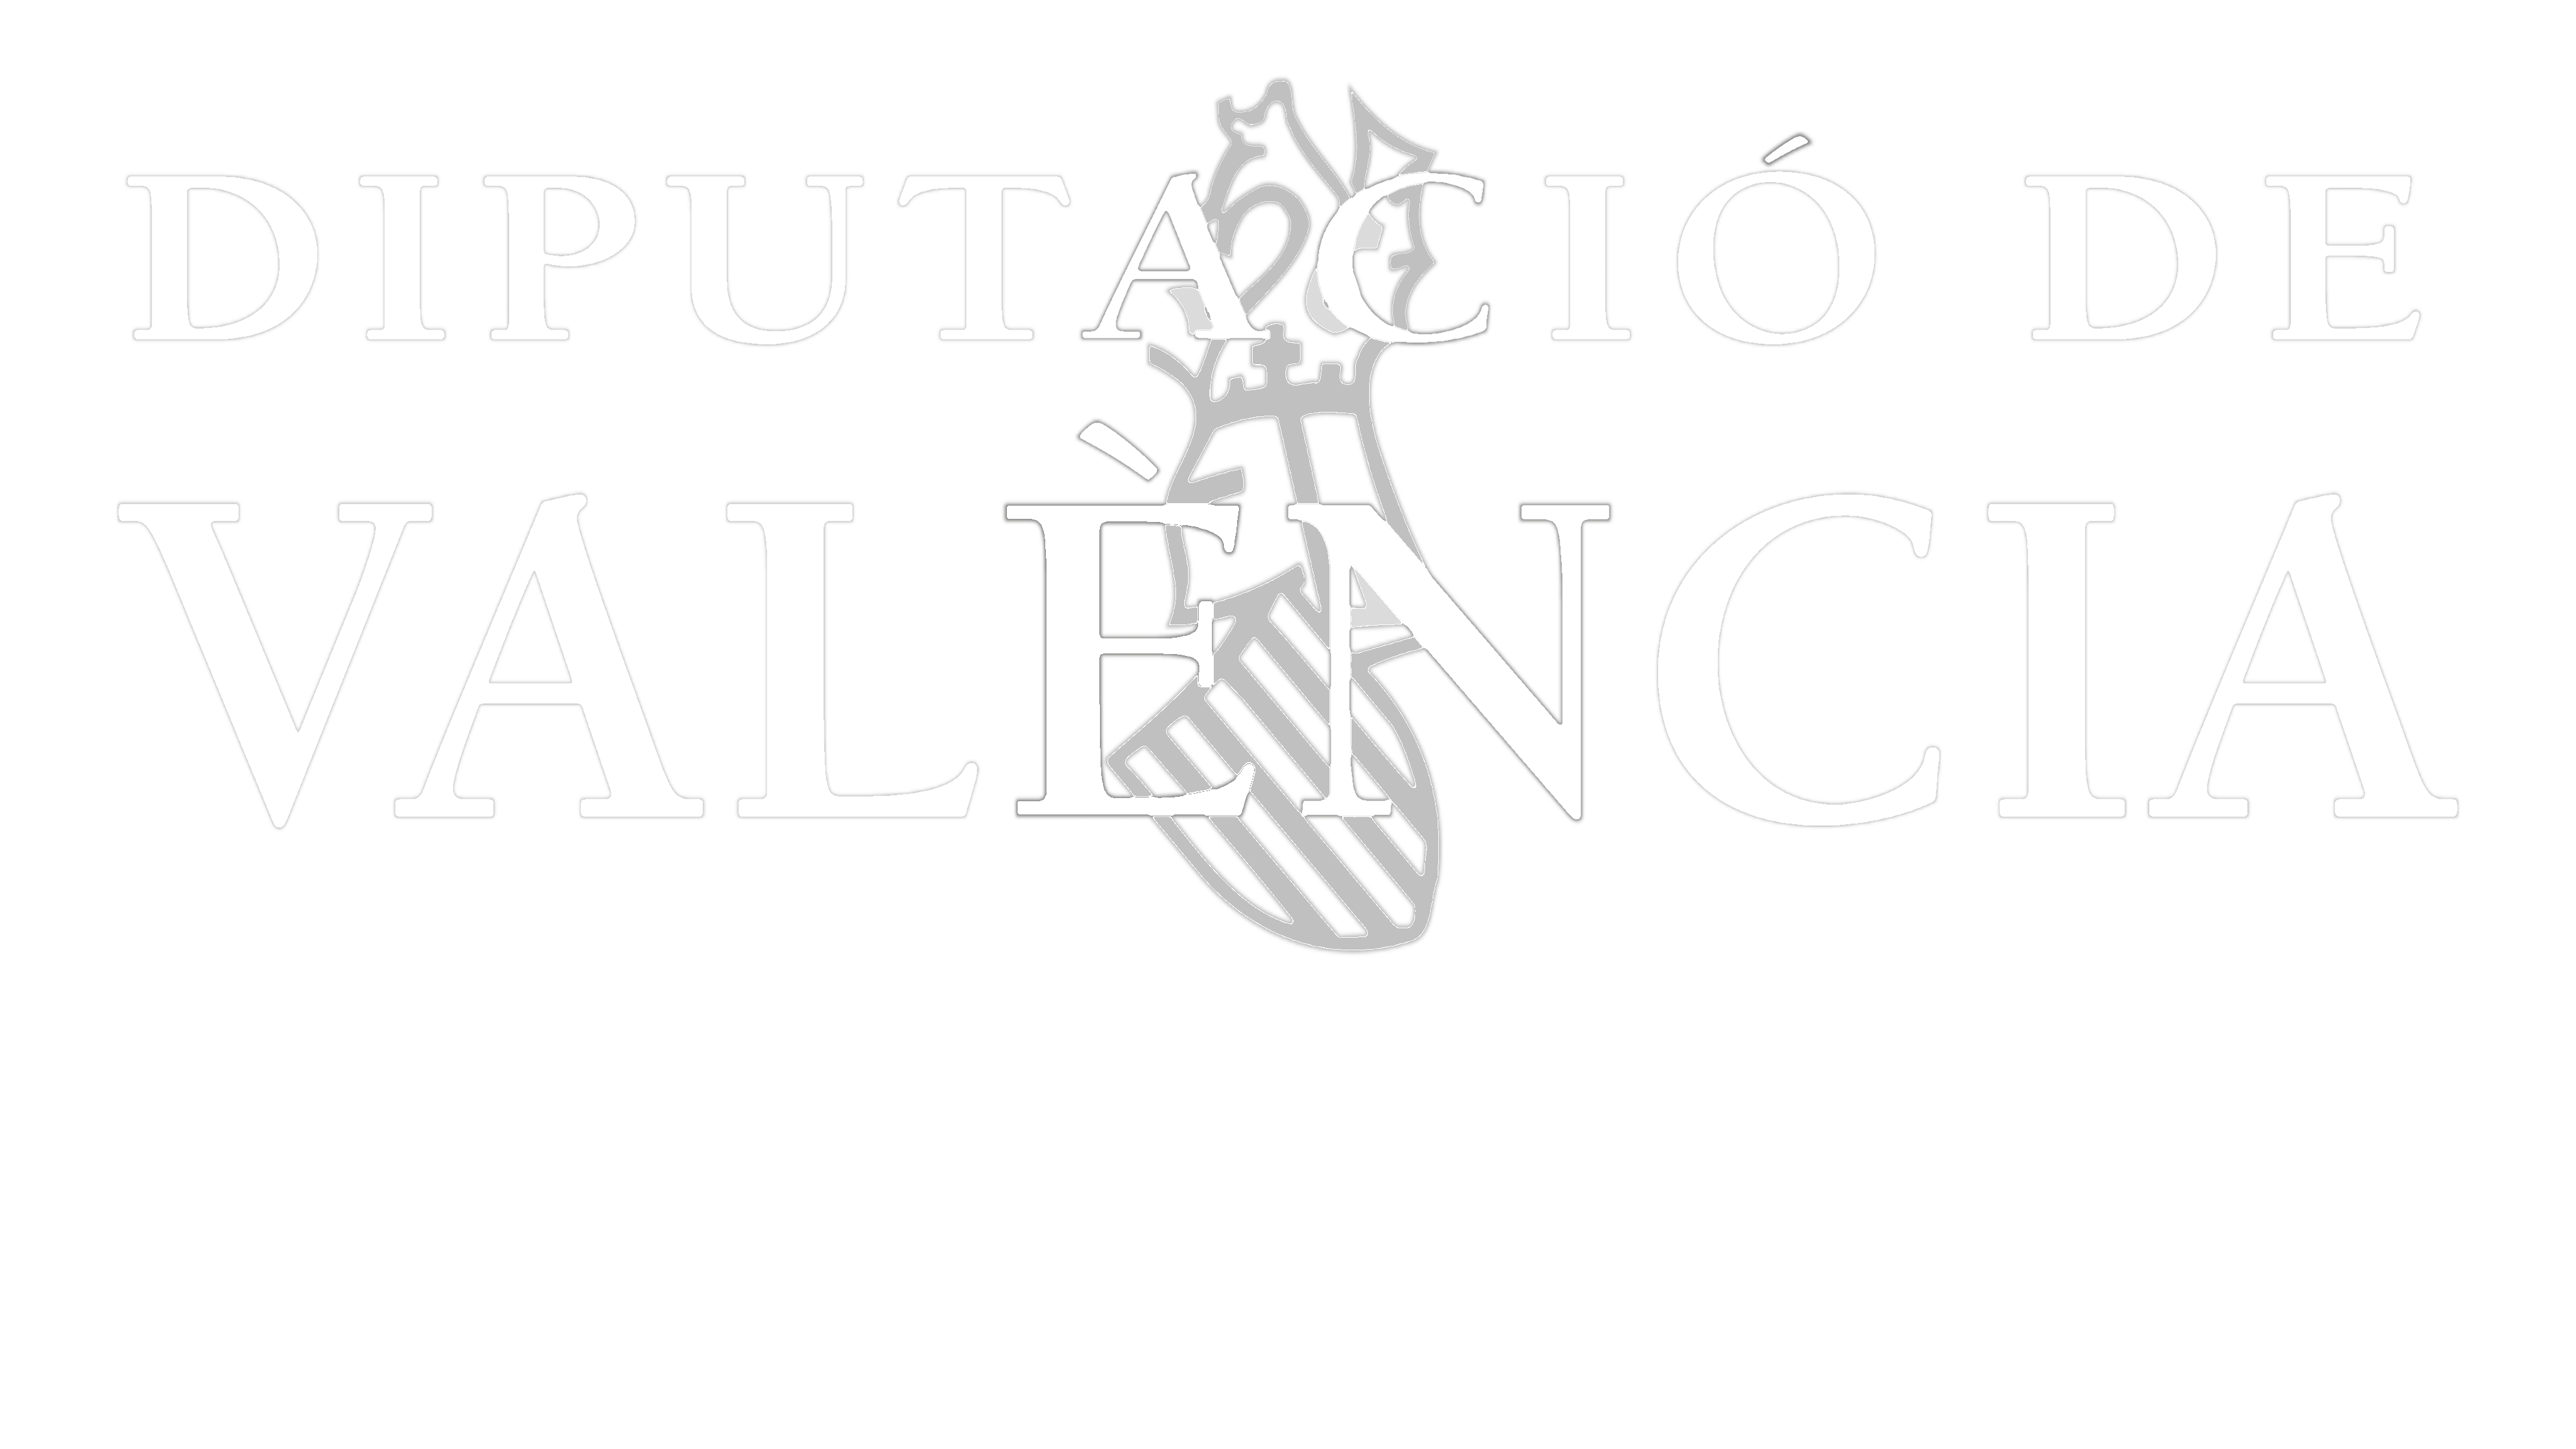 Diputación de Valencia - Servicio de Cooperación Municipal